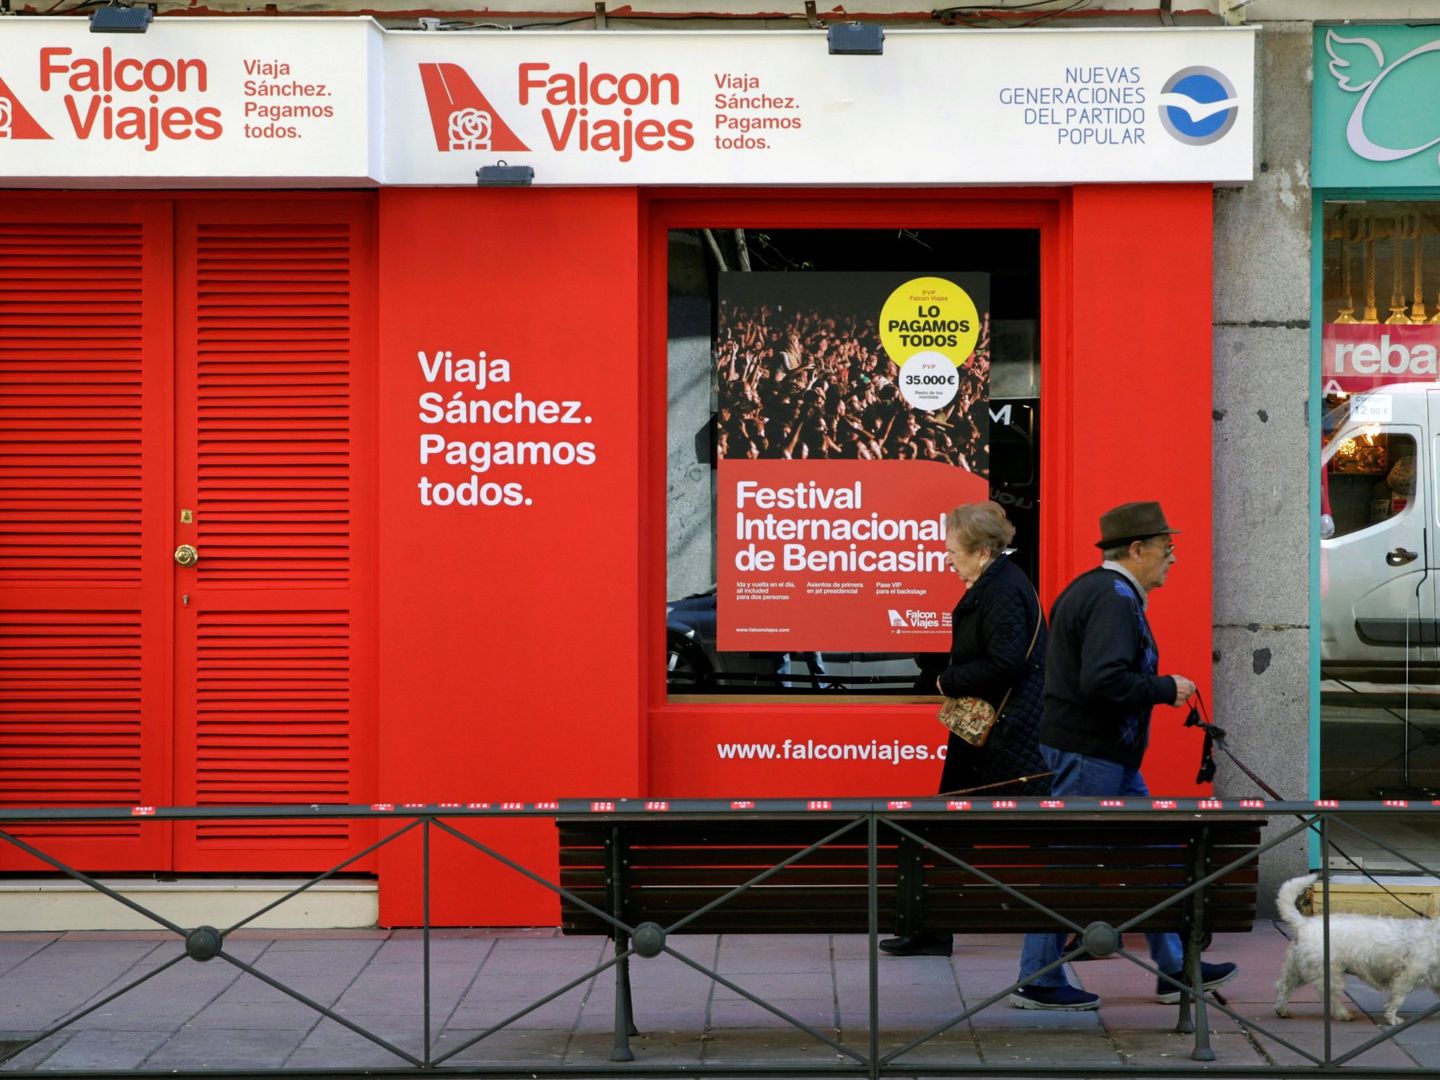 Fachada de la agencia Falcon Viajes, abierta por Nuevas Generaciones del Partido Popular y ubicada en el número 56 de la madrileña calle Ferraz, en 2019. (Nico Rodríguez)